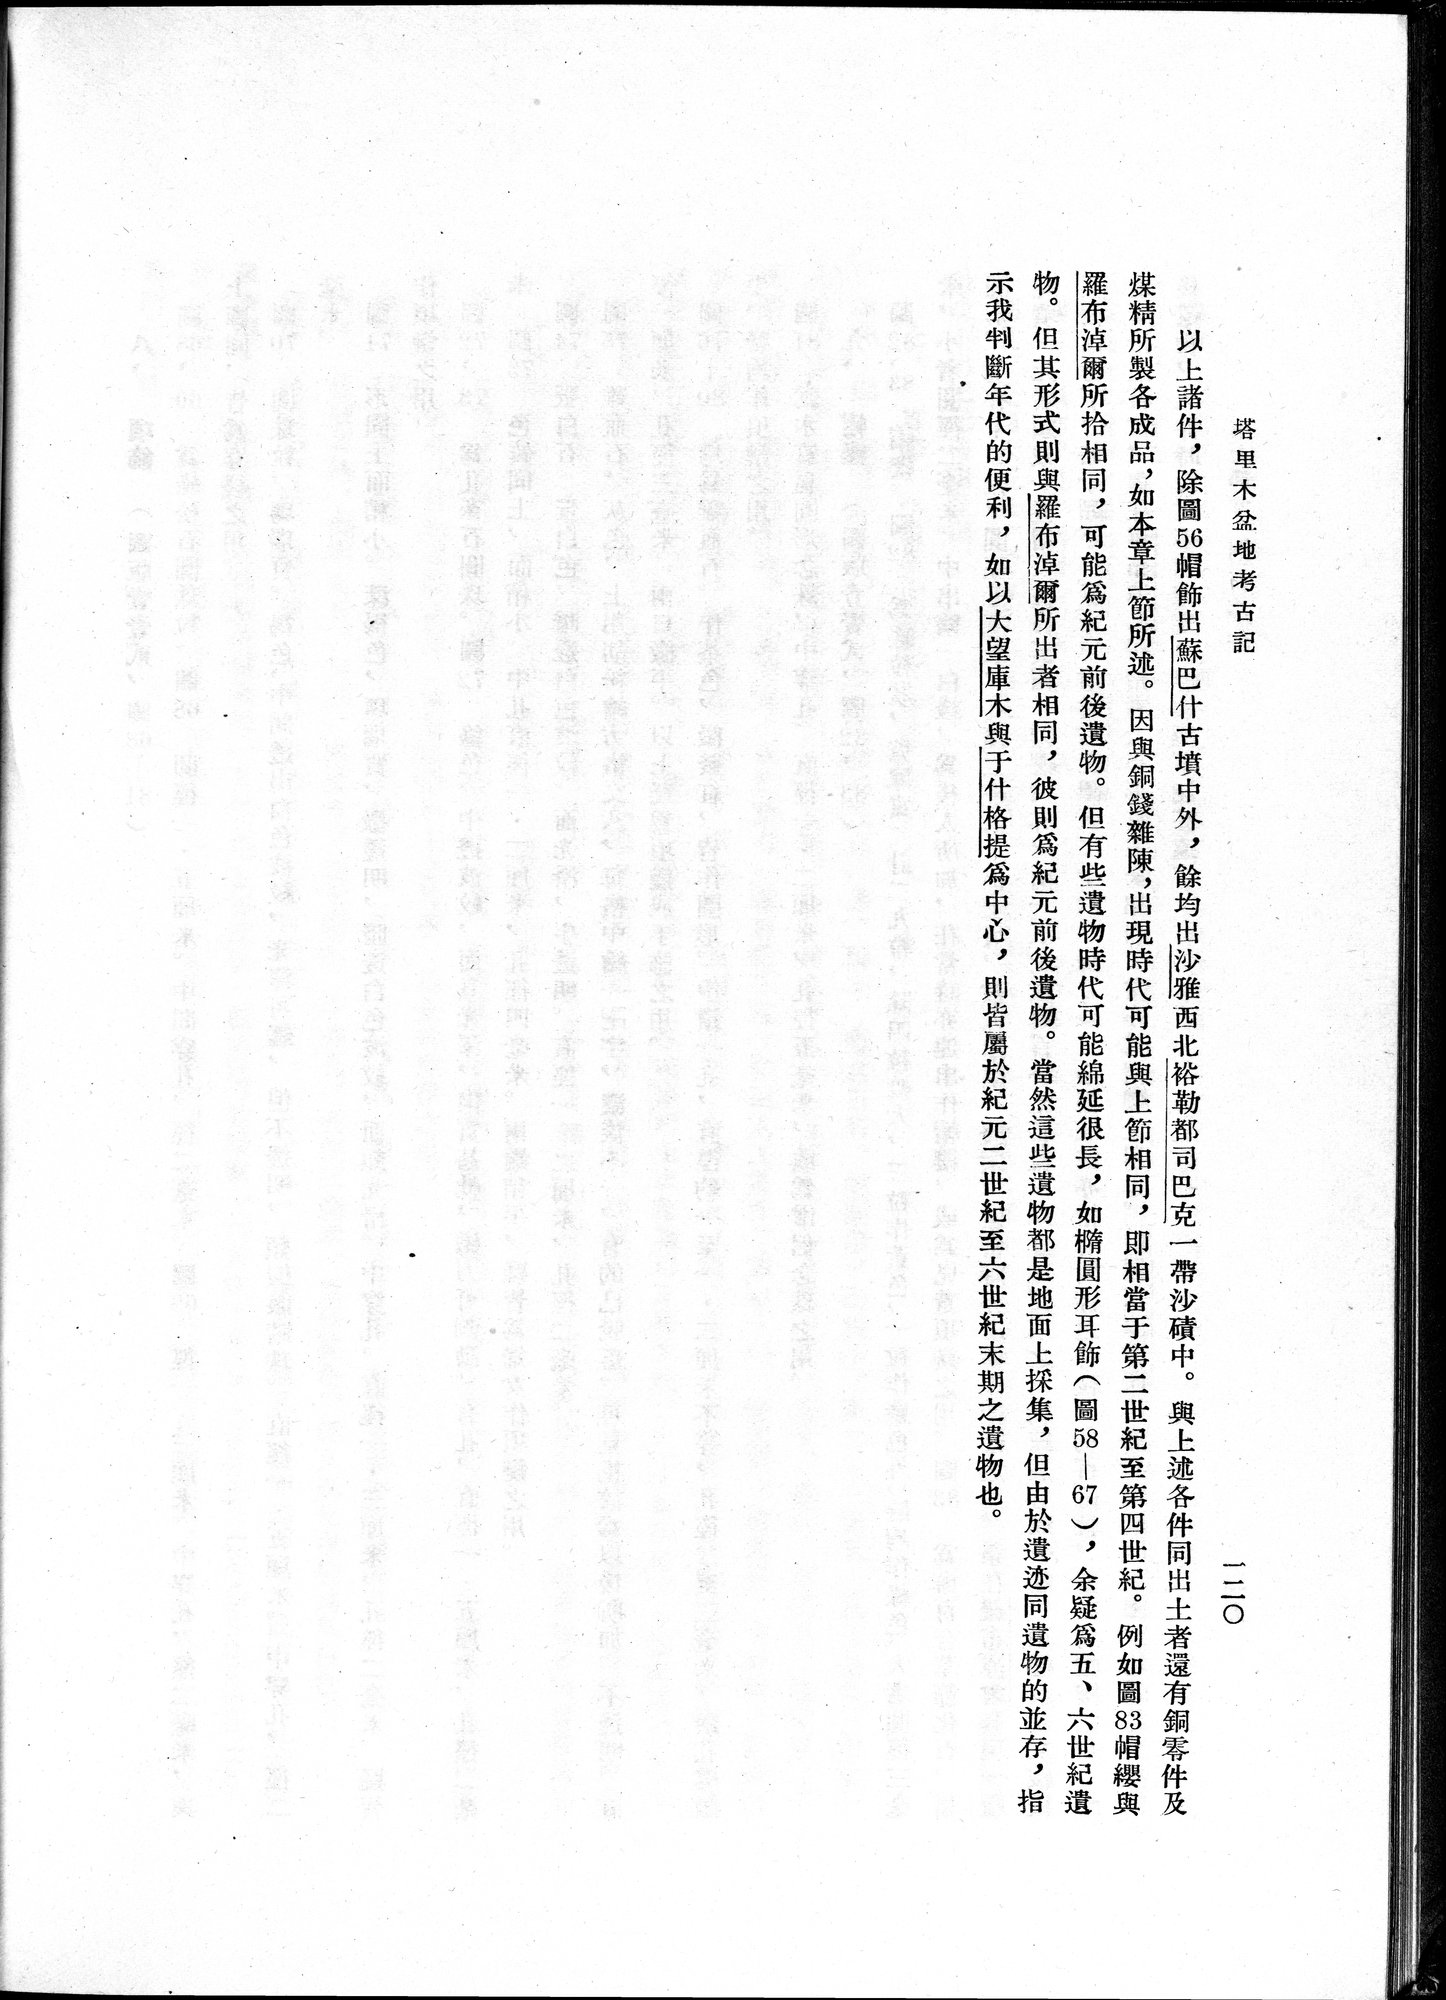 塔里木盆地考古記 : vol.1 / Page 184 (Grayscale High Resolution Image)